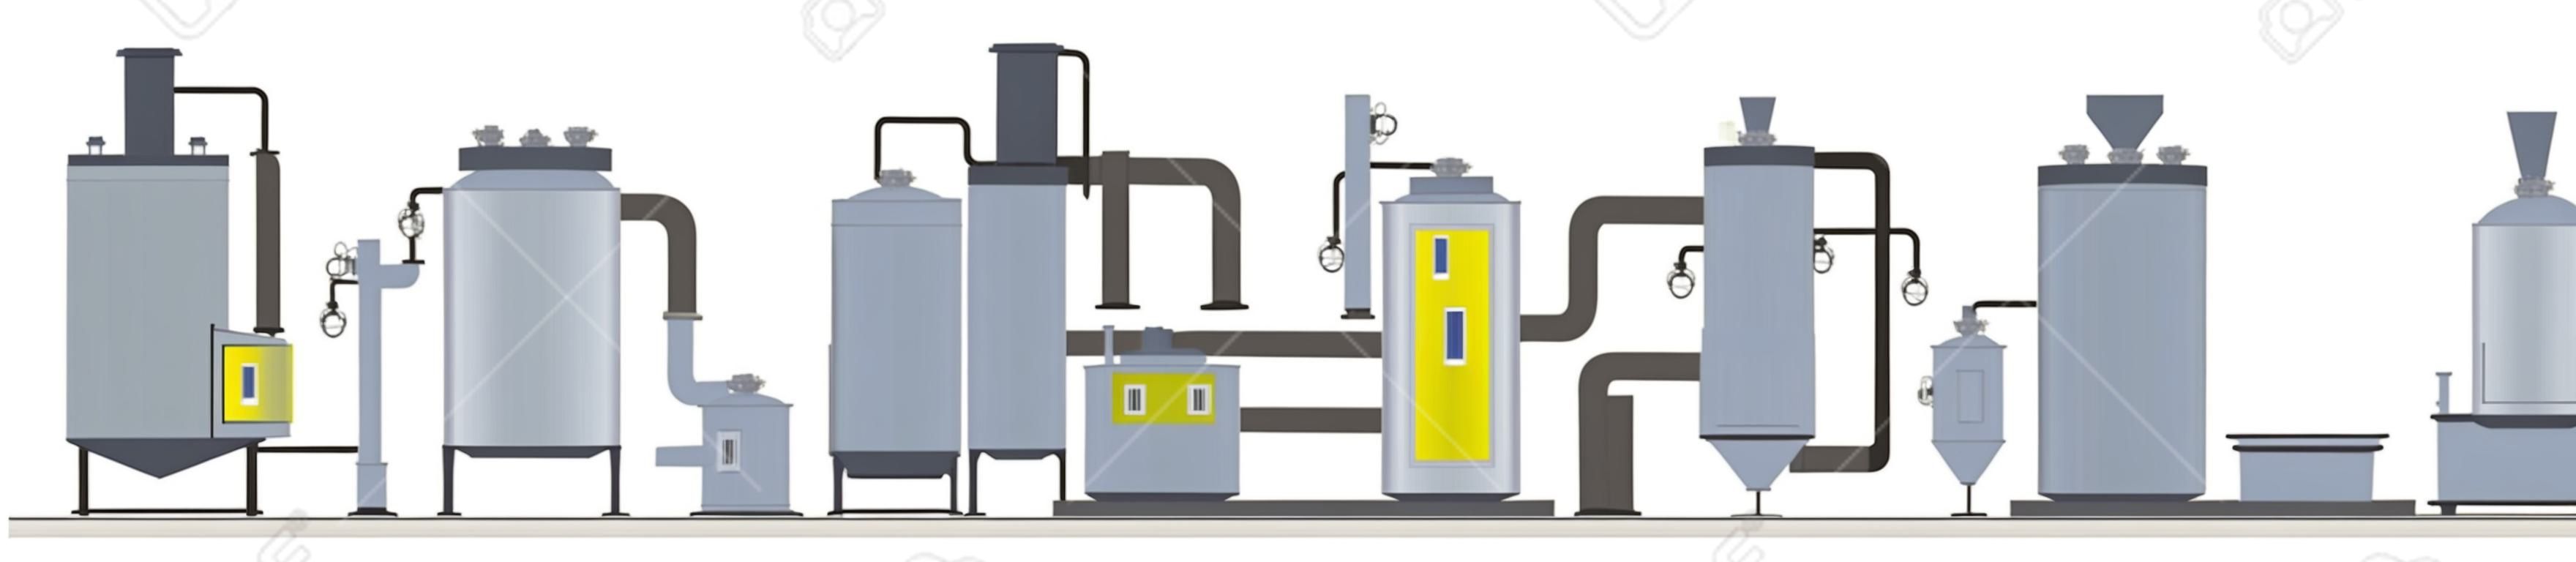 Estágios de processo de produção ou fabricação de azeite. Lavagem, prensagem, filtração e embalagem de garrafas com óleo orgânico. Ilustração plana vetorial isolada